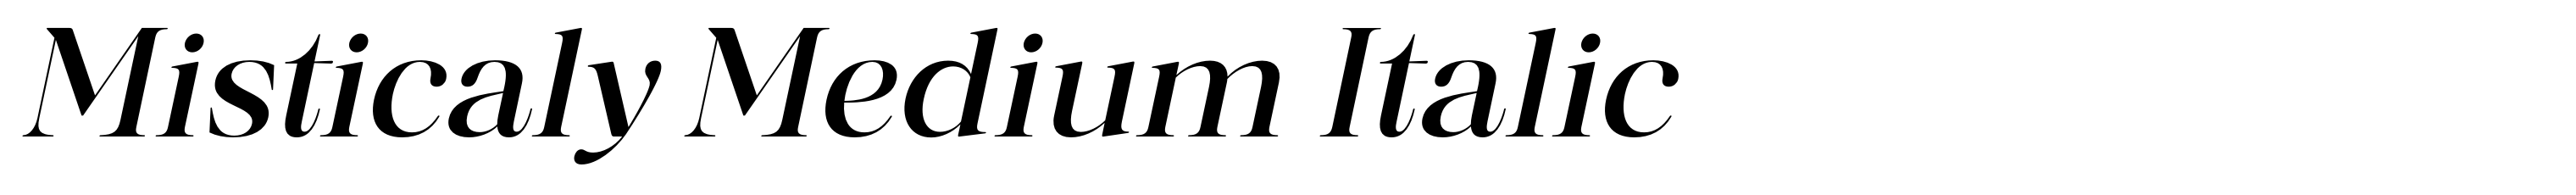 Misticaly Medium Italic